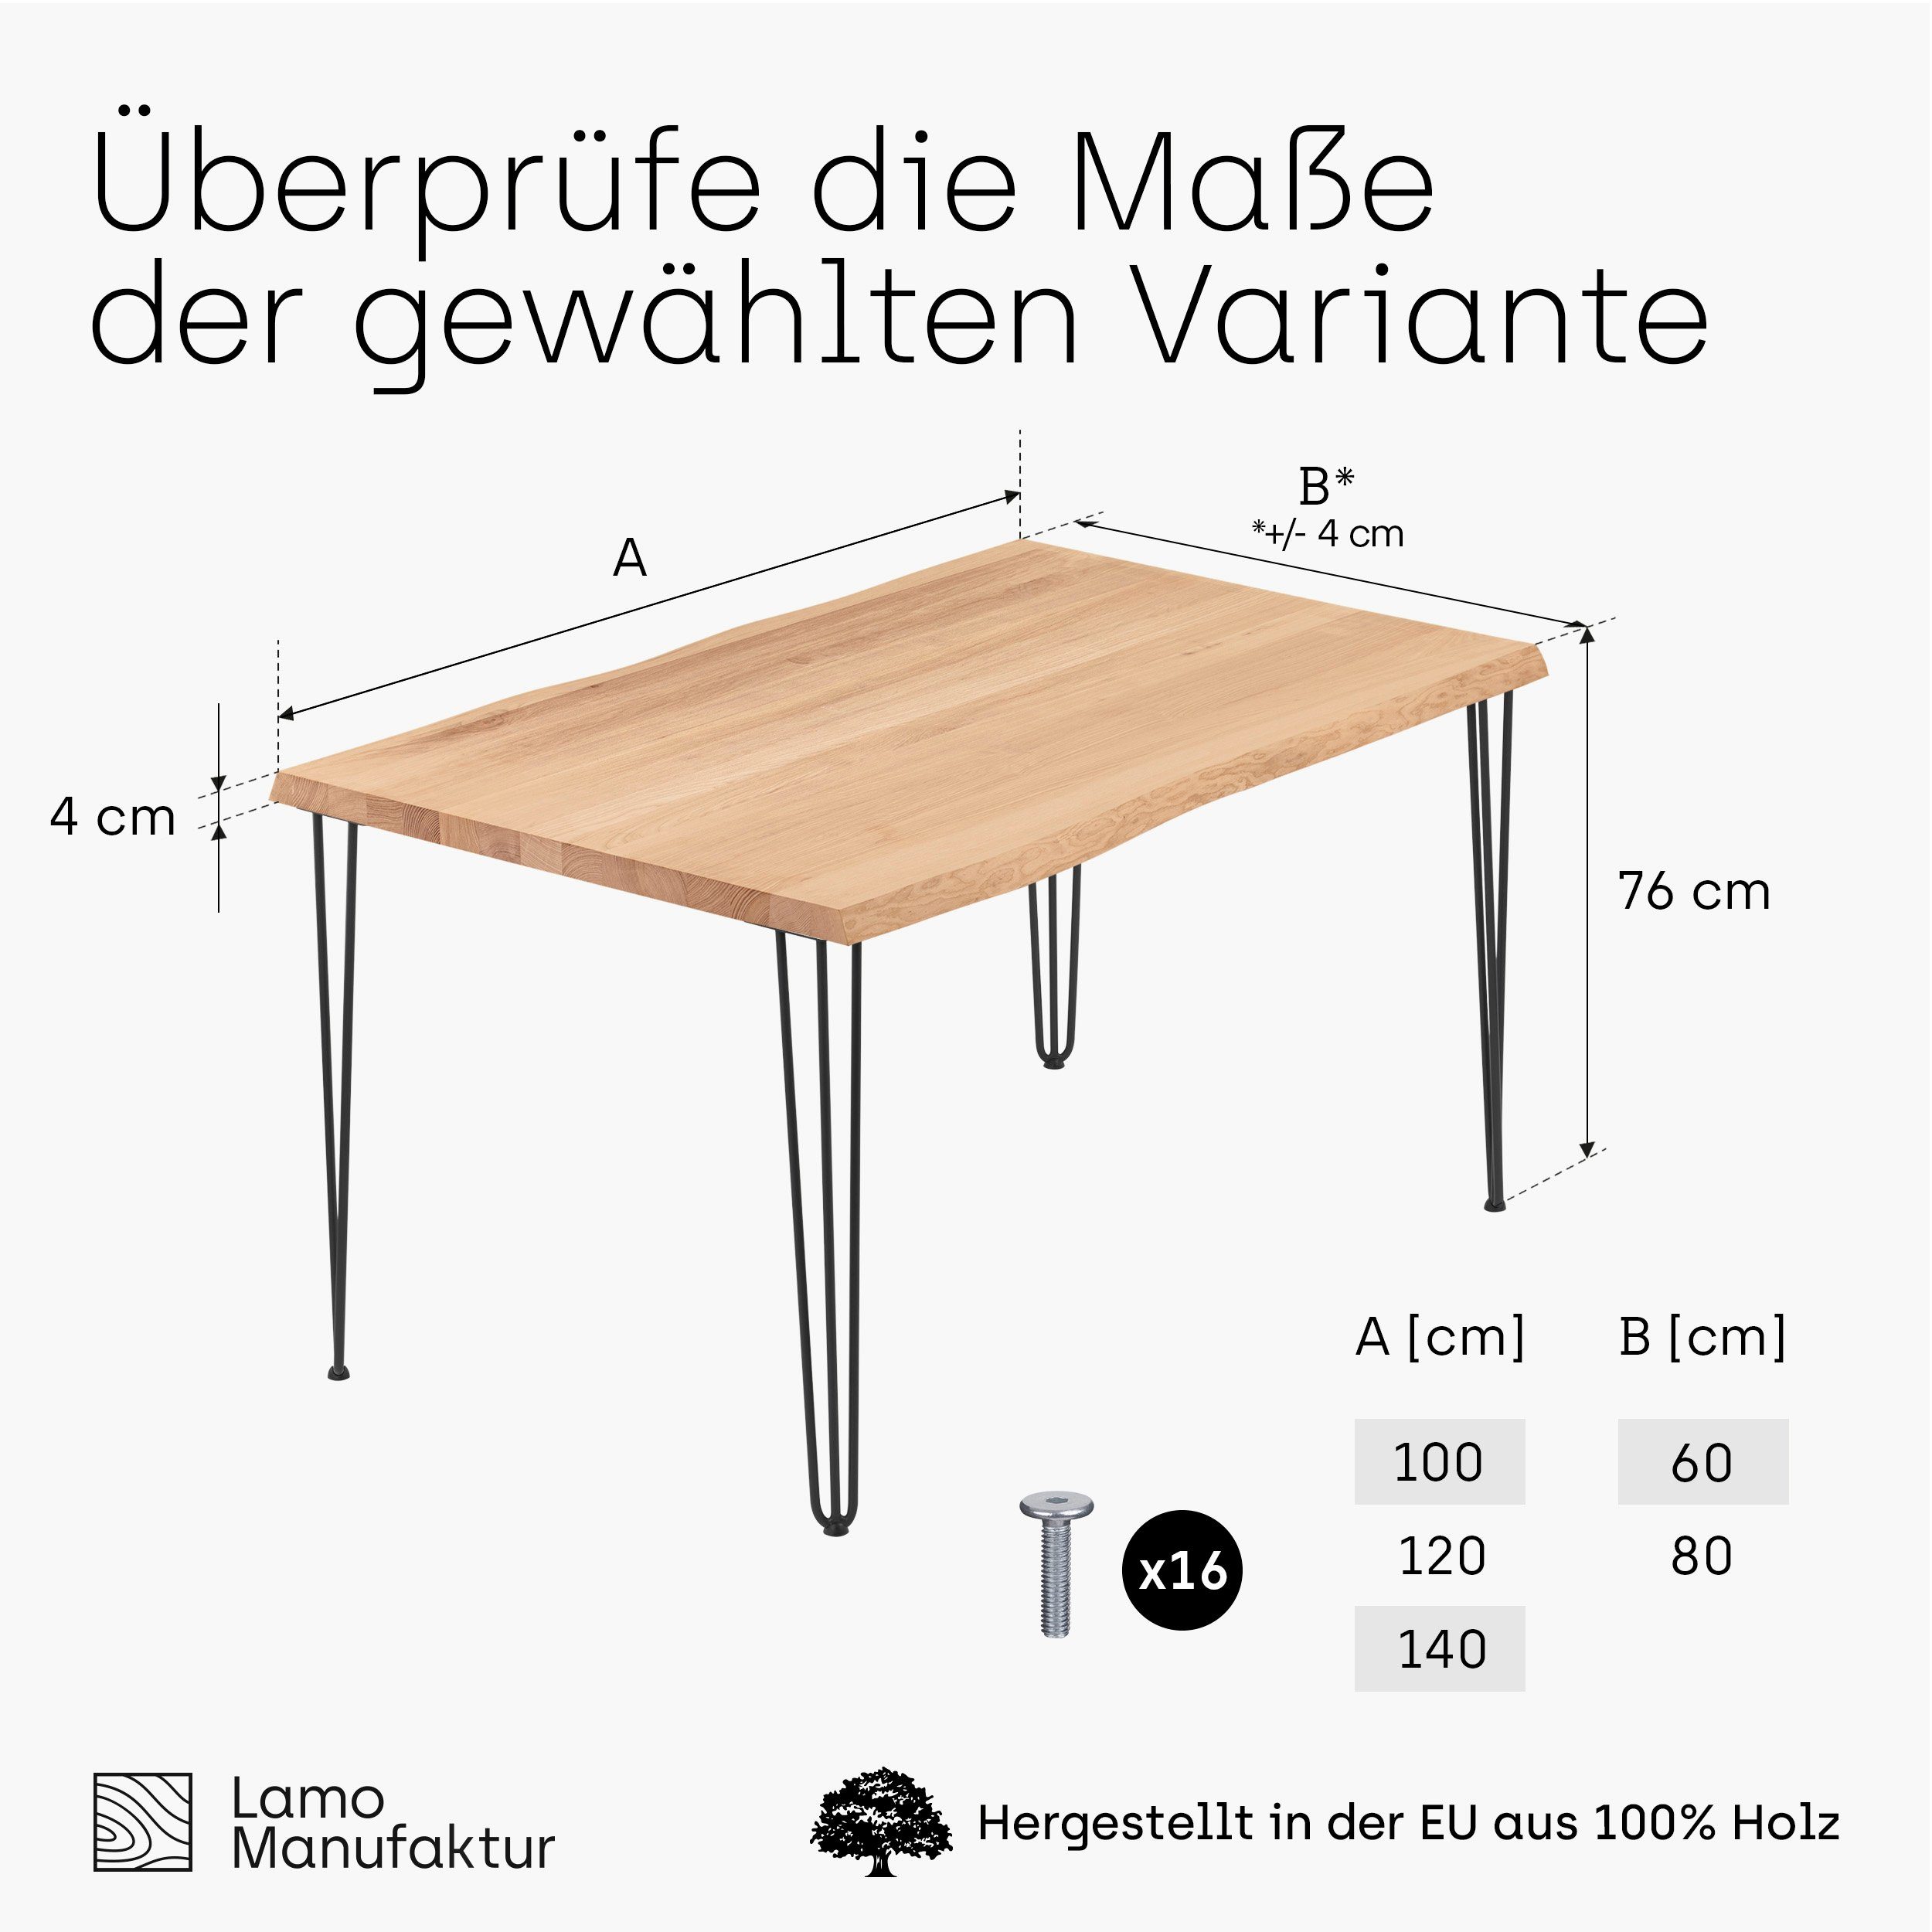 (1 LAMO Metallgestell Creative massiv Baumkante inkl. | Natur Schwarz Tisch), Massivholz Esstisch Baumkantentisch Manufaktur